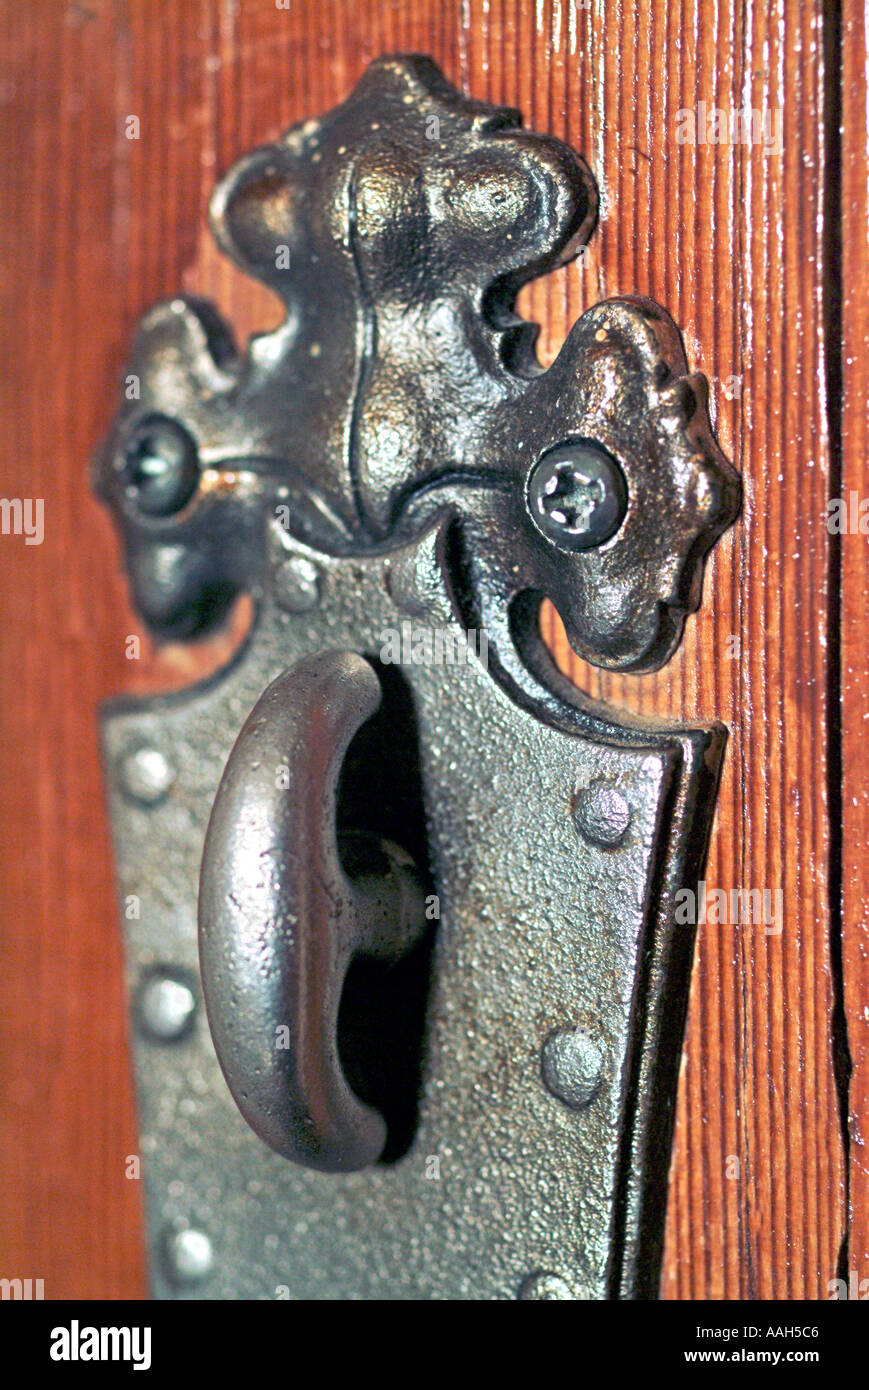 Antica masaneta con twist lock Foto Stock